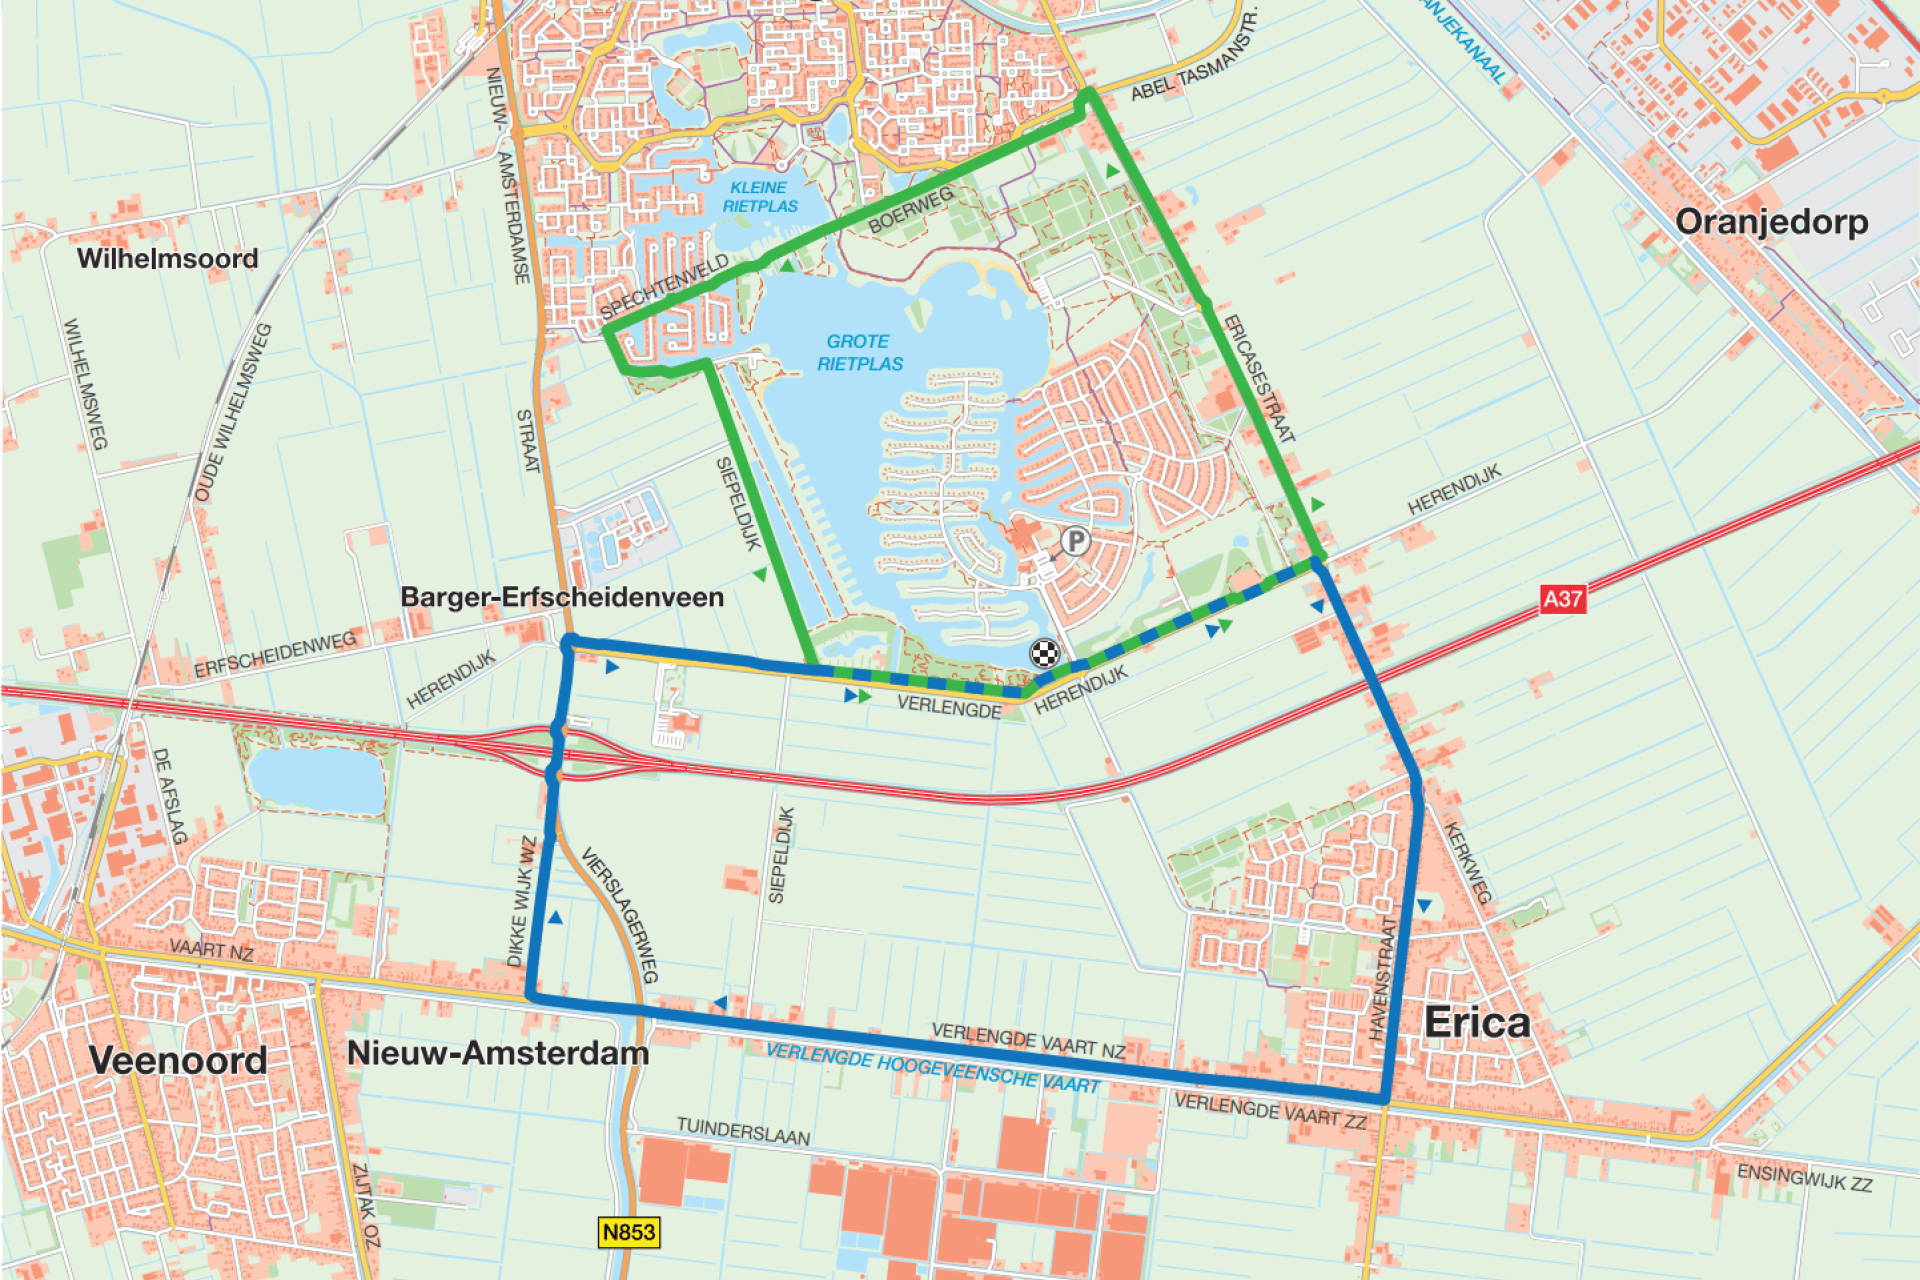 Hardlooproute in Erica weergegeven op een plattegrond